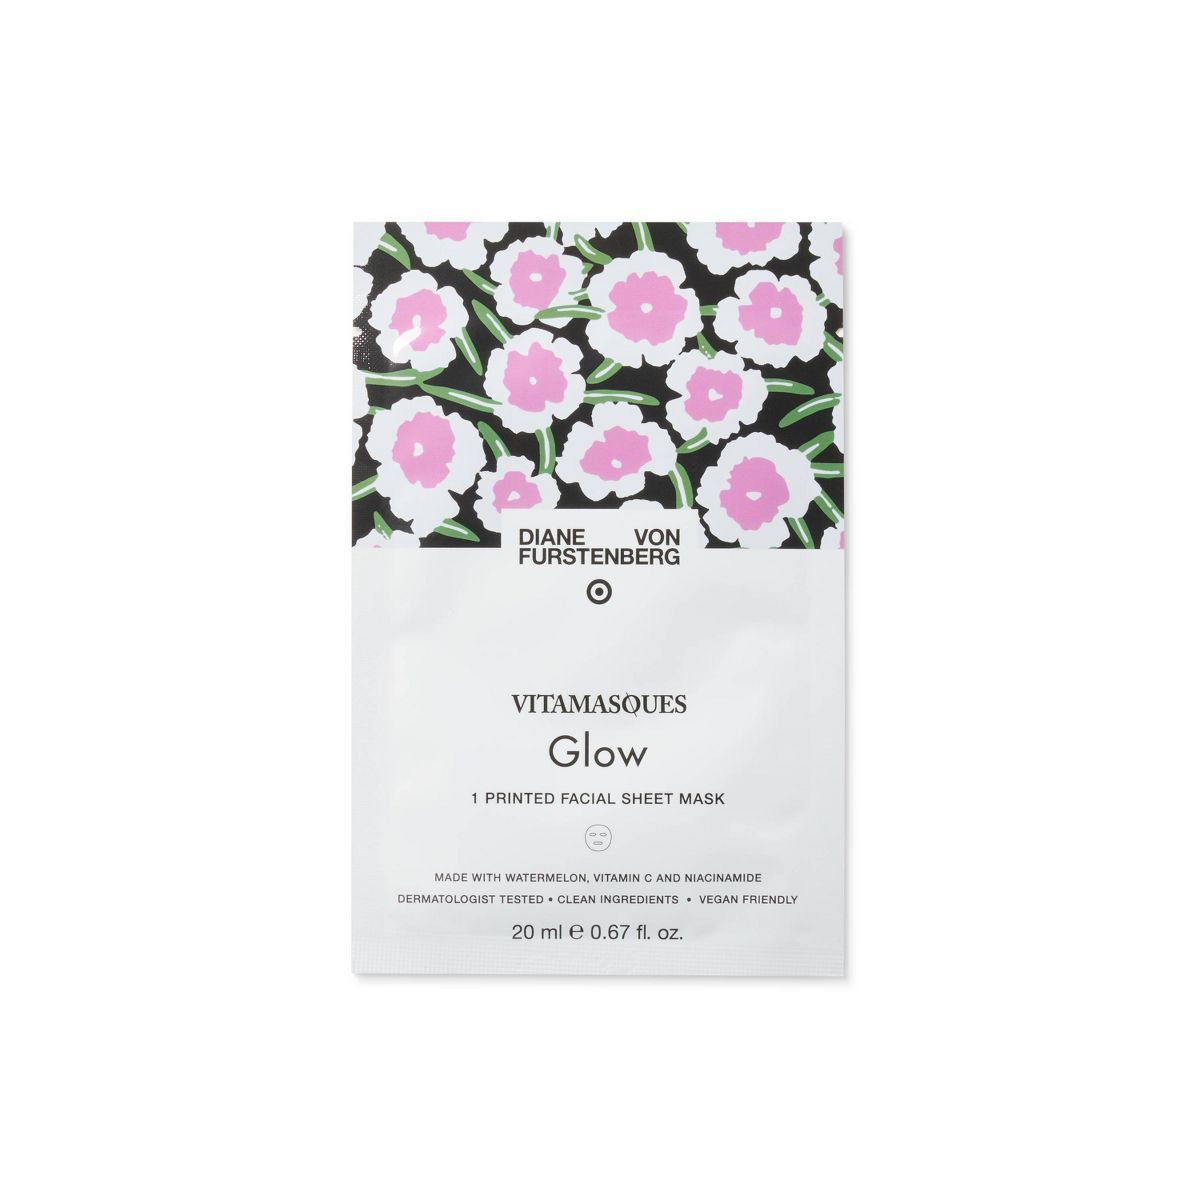 DVF for Target x Vitamasques Poppy Sheet Mask - Glow - 0.67 fl oz | Target